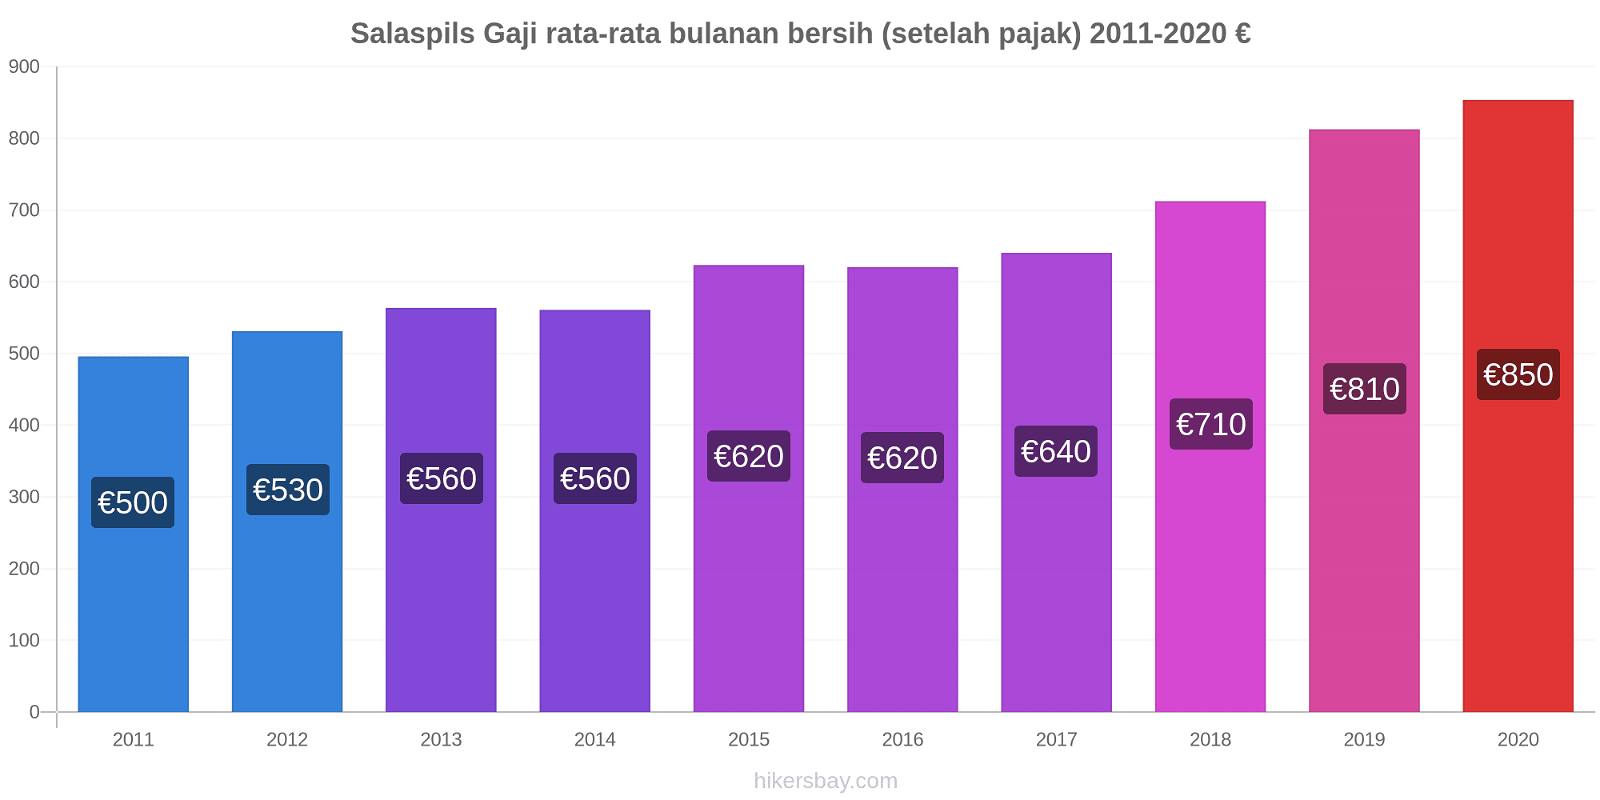 Salaspils perubahan harga Gaji rata-rata bulanan bersih (setelah pajak) hikersbay.com